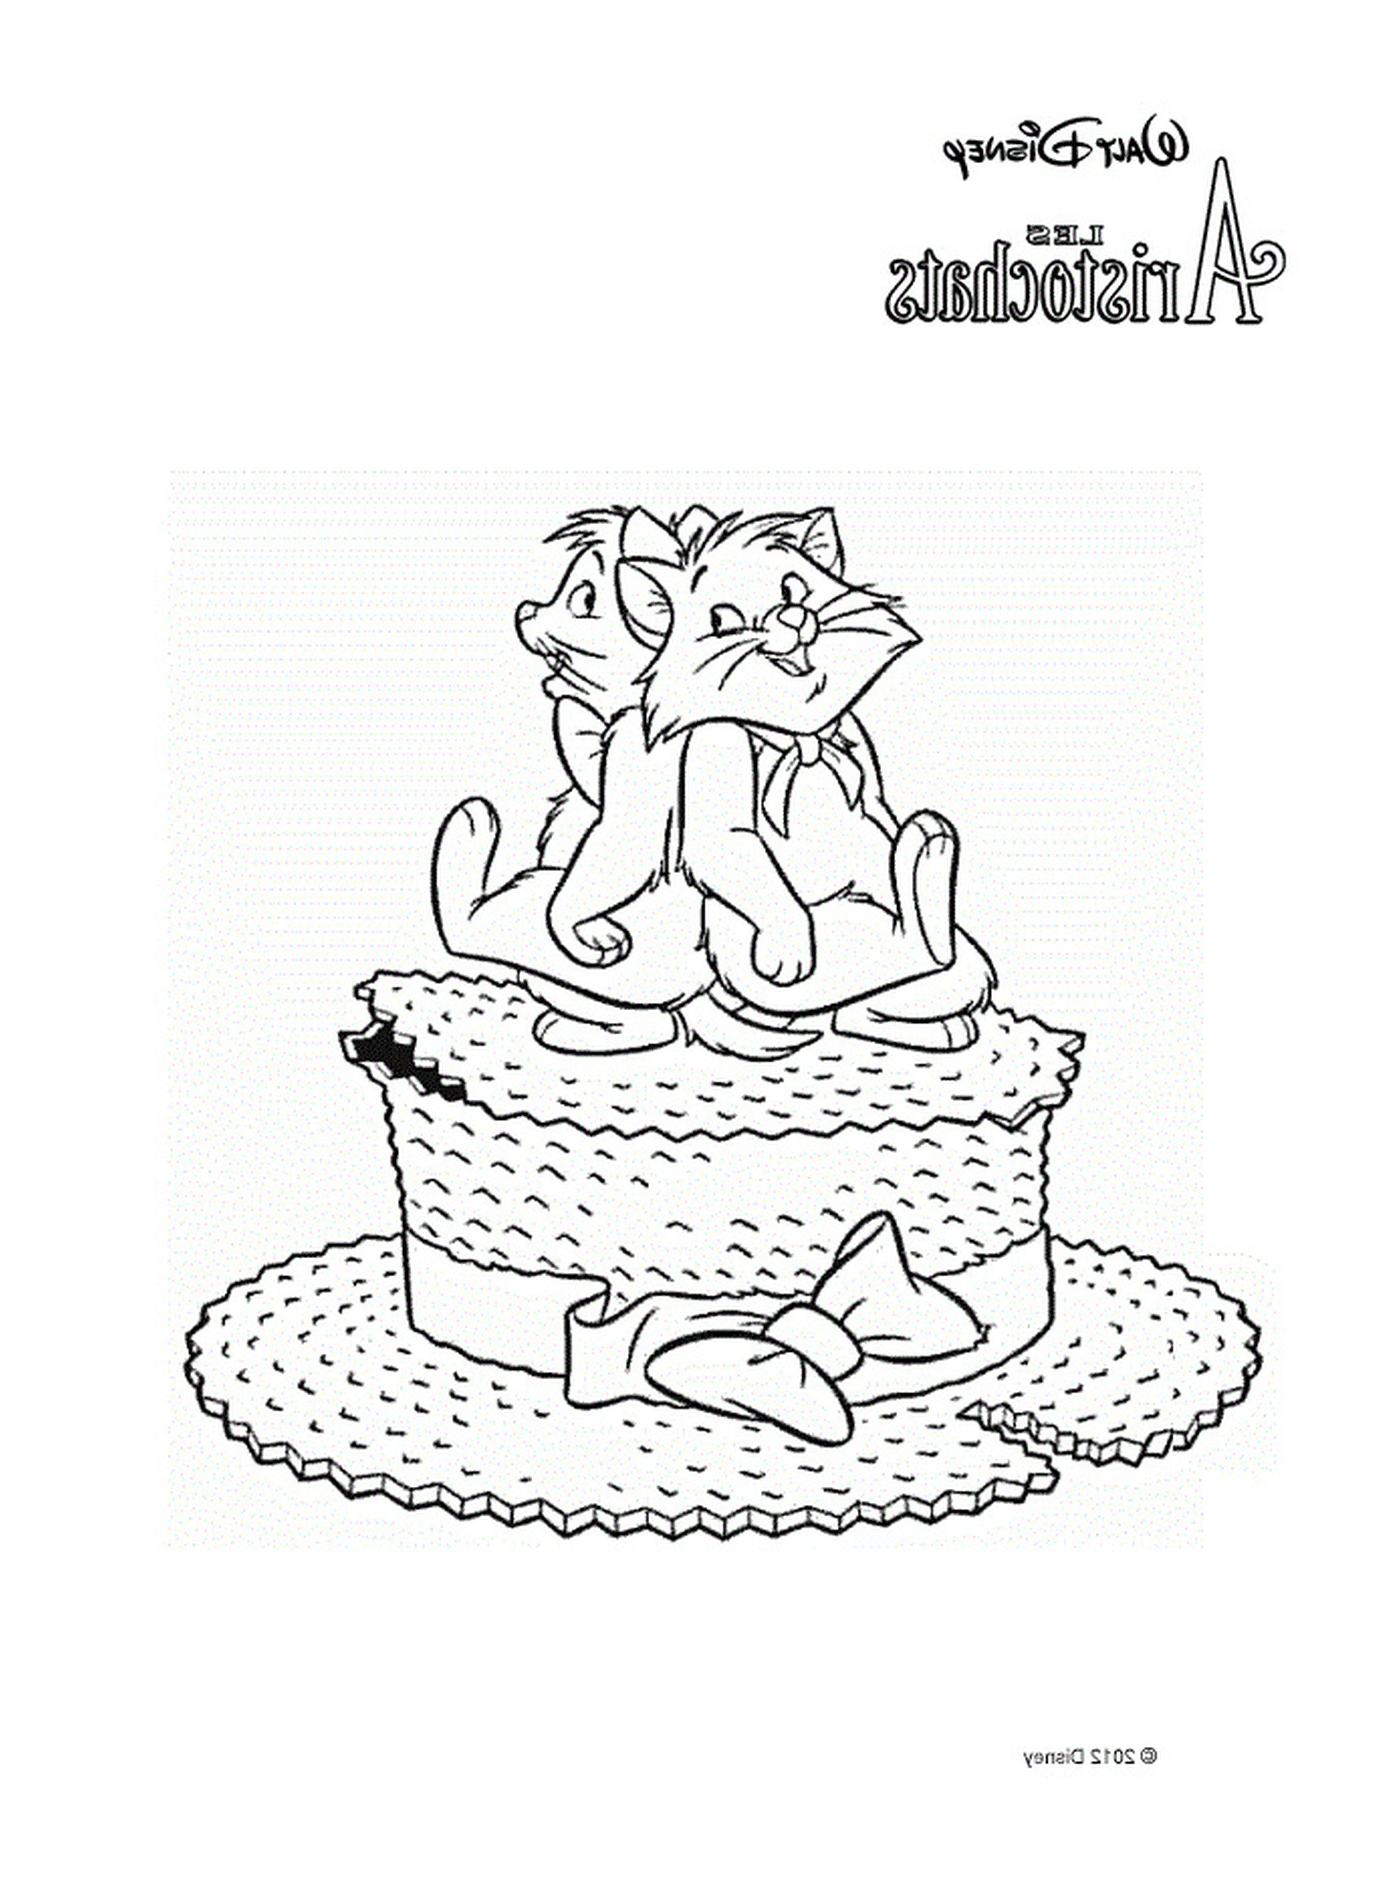  Zwei Katzen sitzen auf einem großen Kuchen 